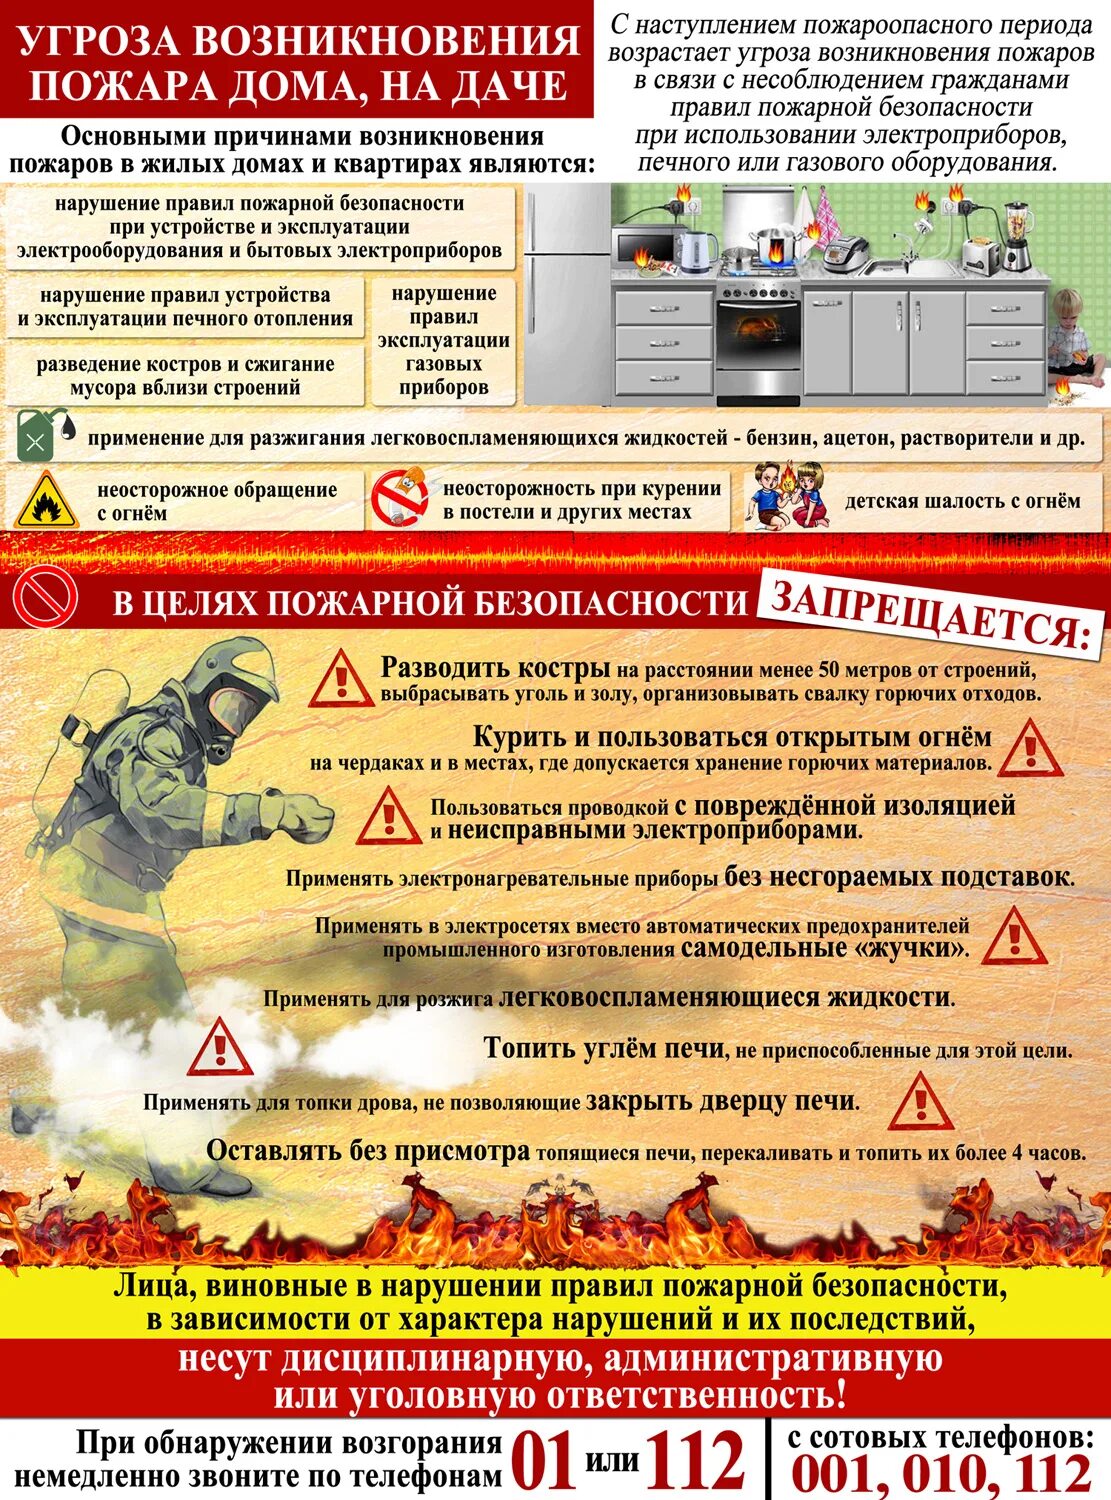 Причины нарушения правил пожарной безопасности